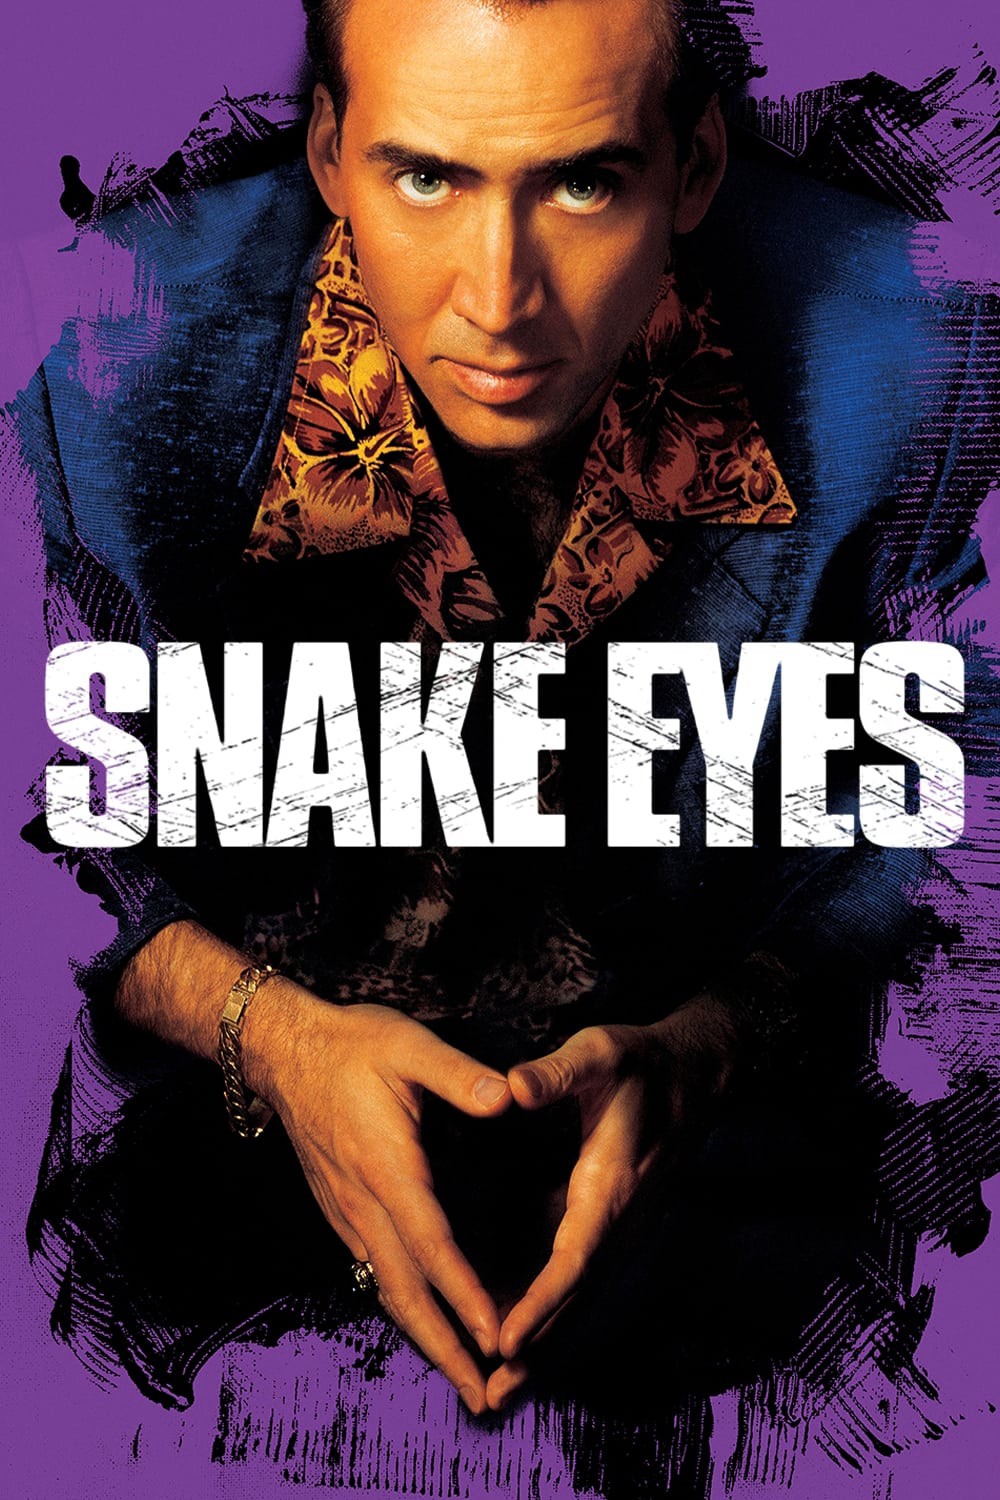 Mắt Rắn - Snake Eyes (1998)